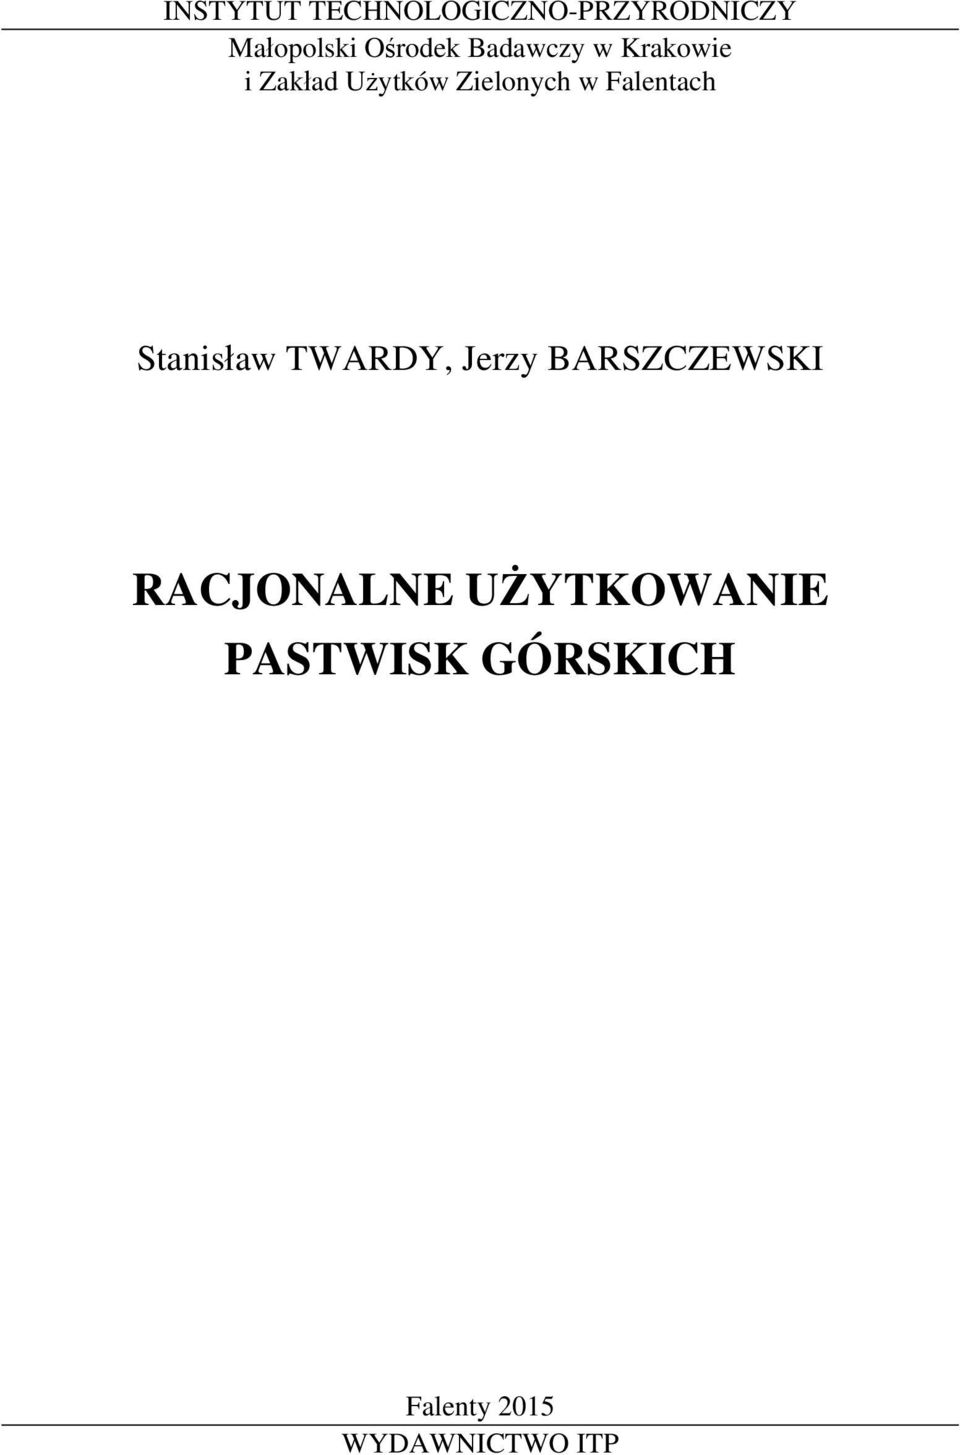 Falentach Stanisław TWARDY, Jerzy BARSZCZEWSKI